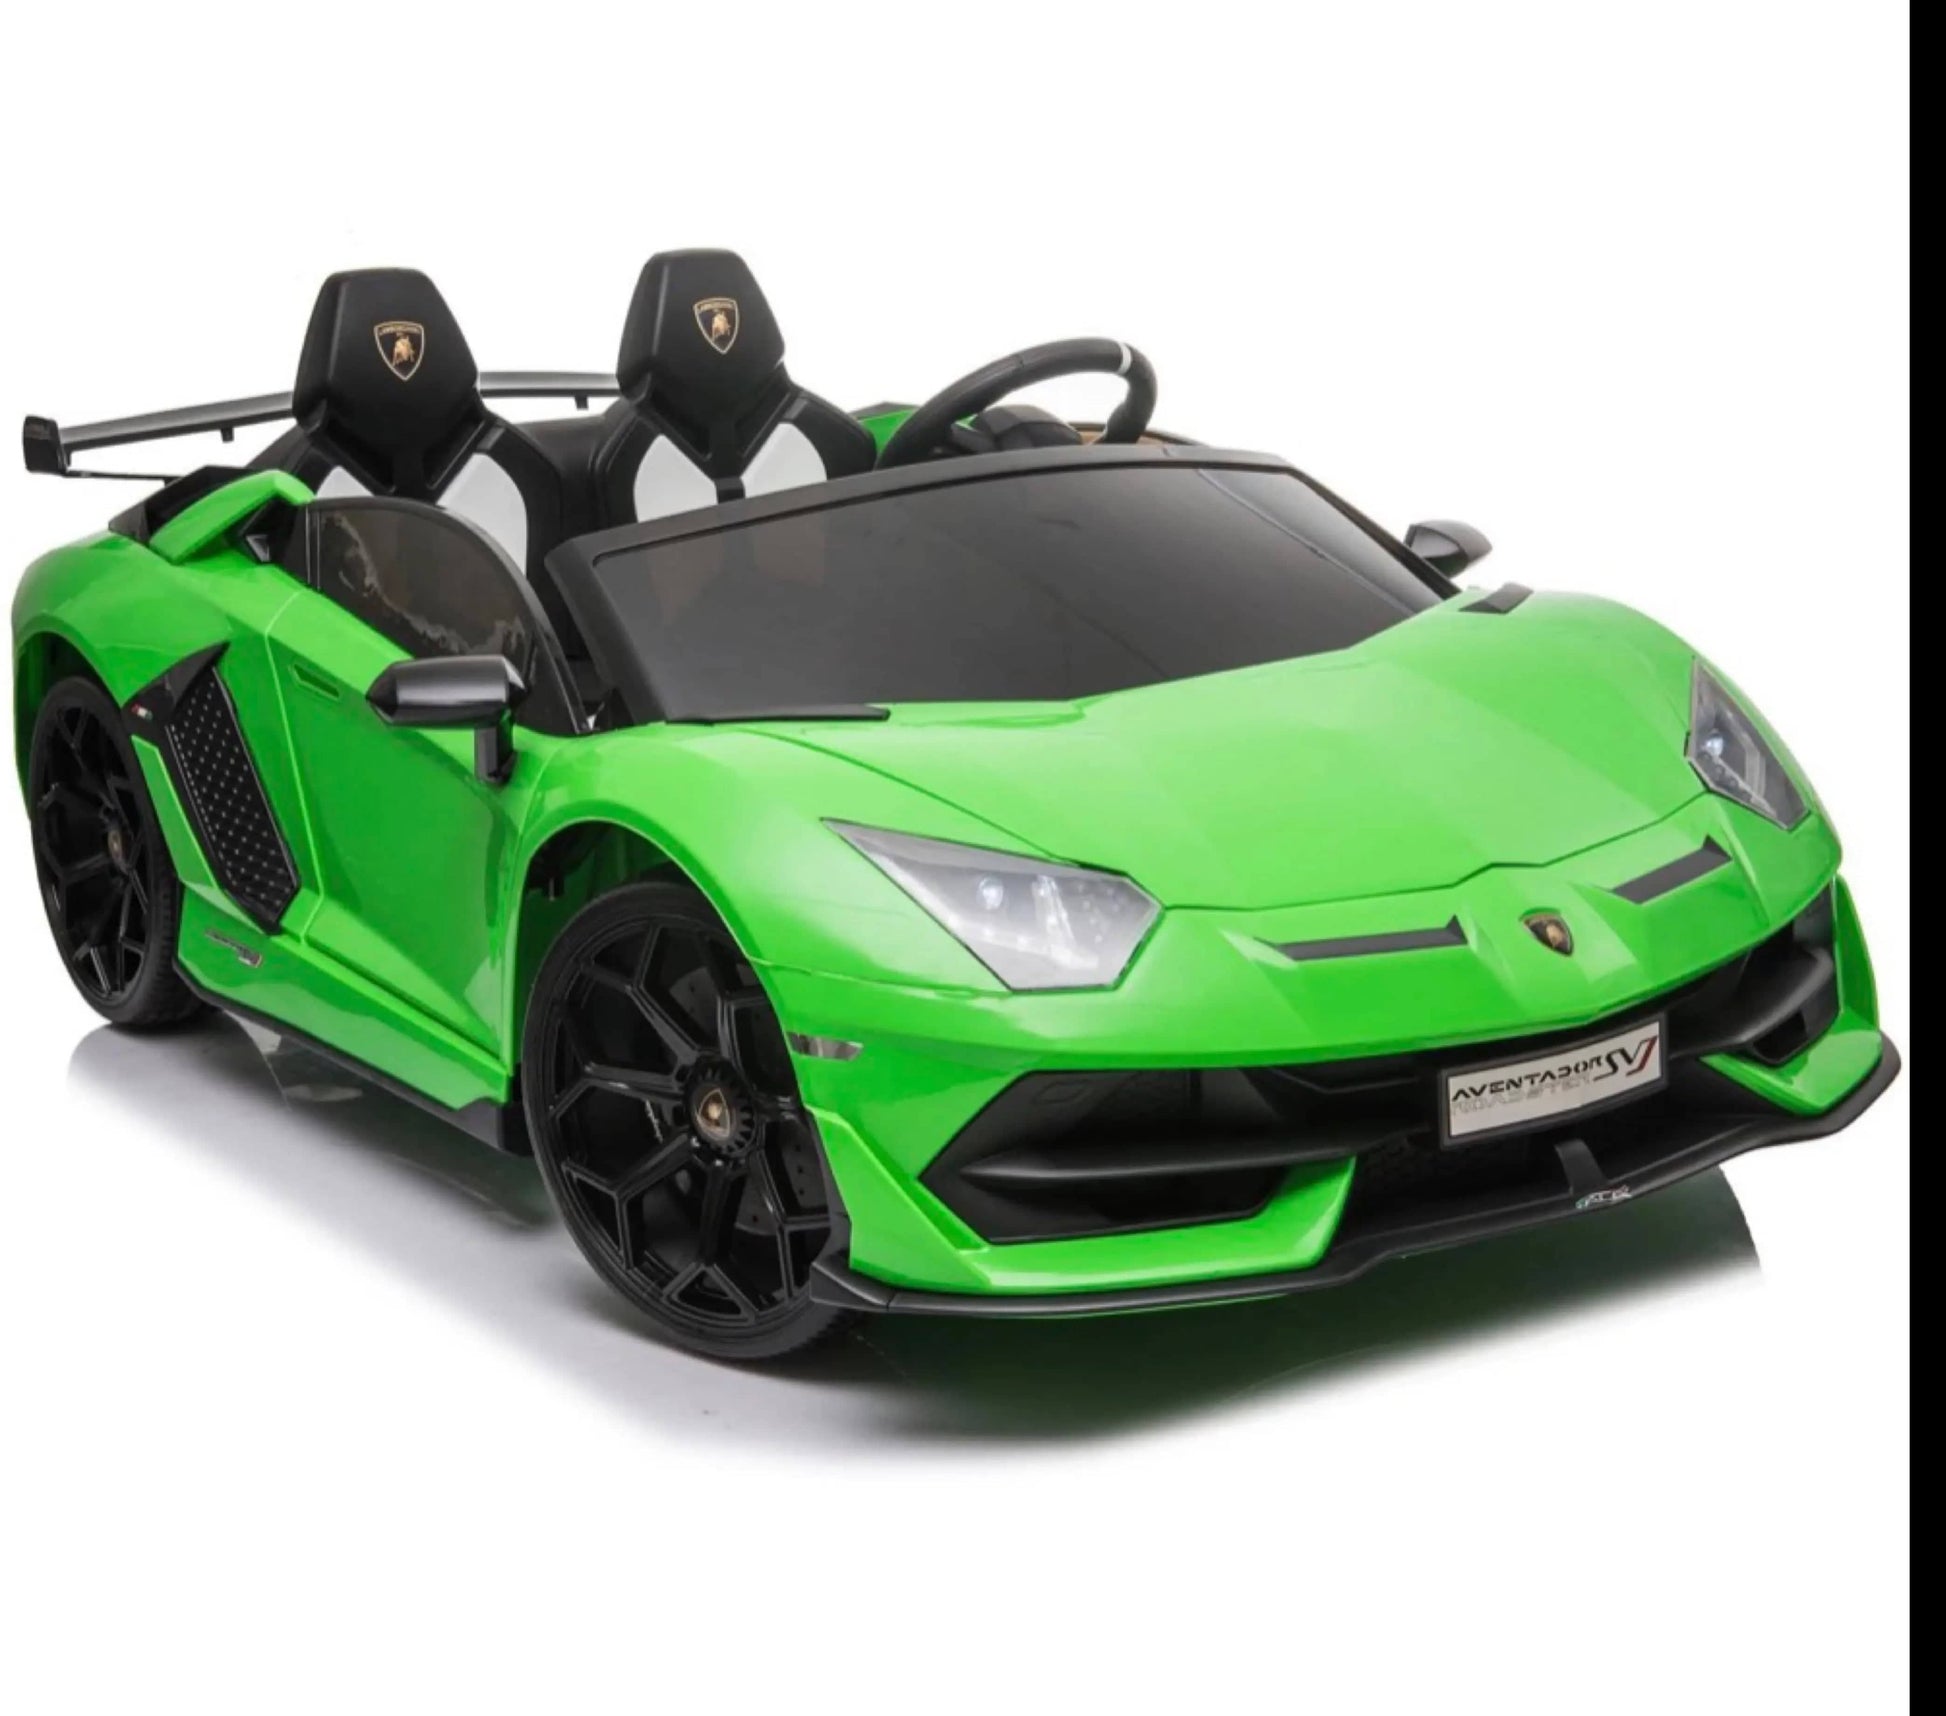 24V 2-Seater High Speed Lamborghini Aventador Drift Car for Kids R&G TOYS